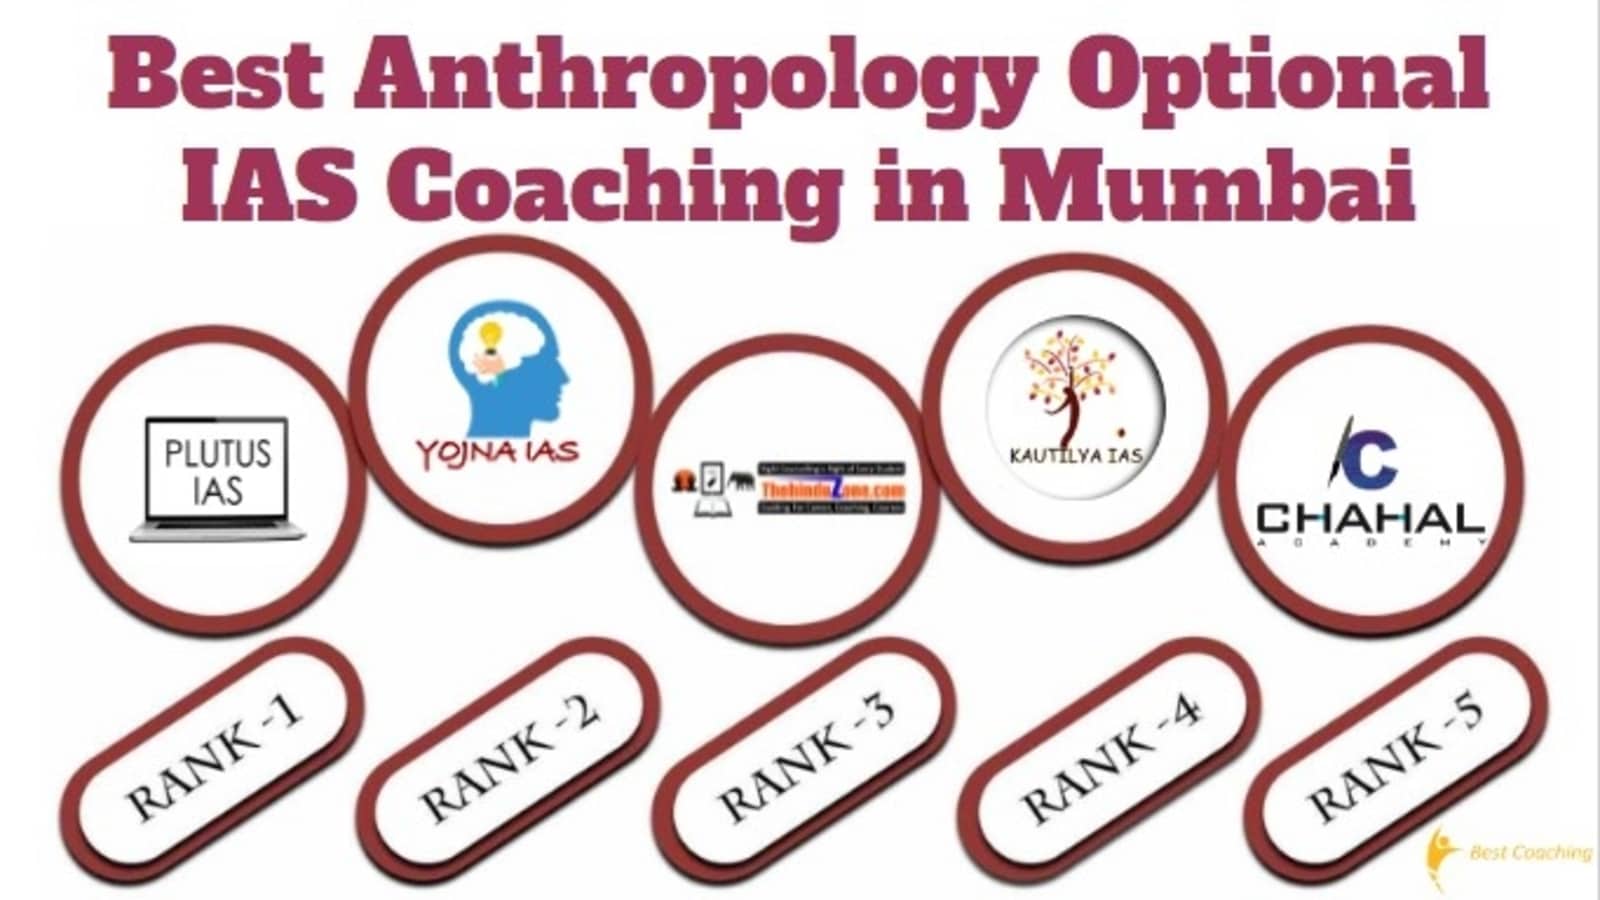 Best Anthropology Optional IAS Coaching in Mumbai